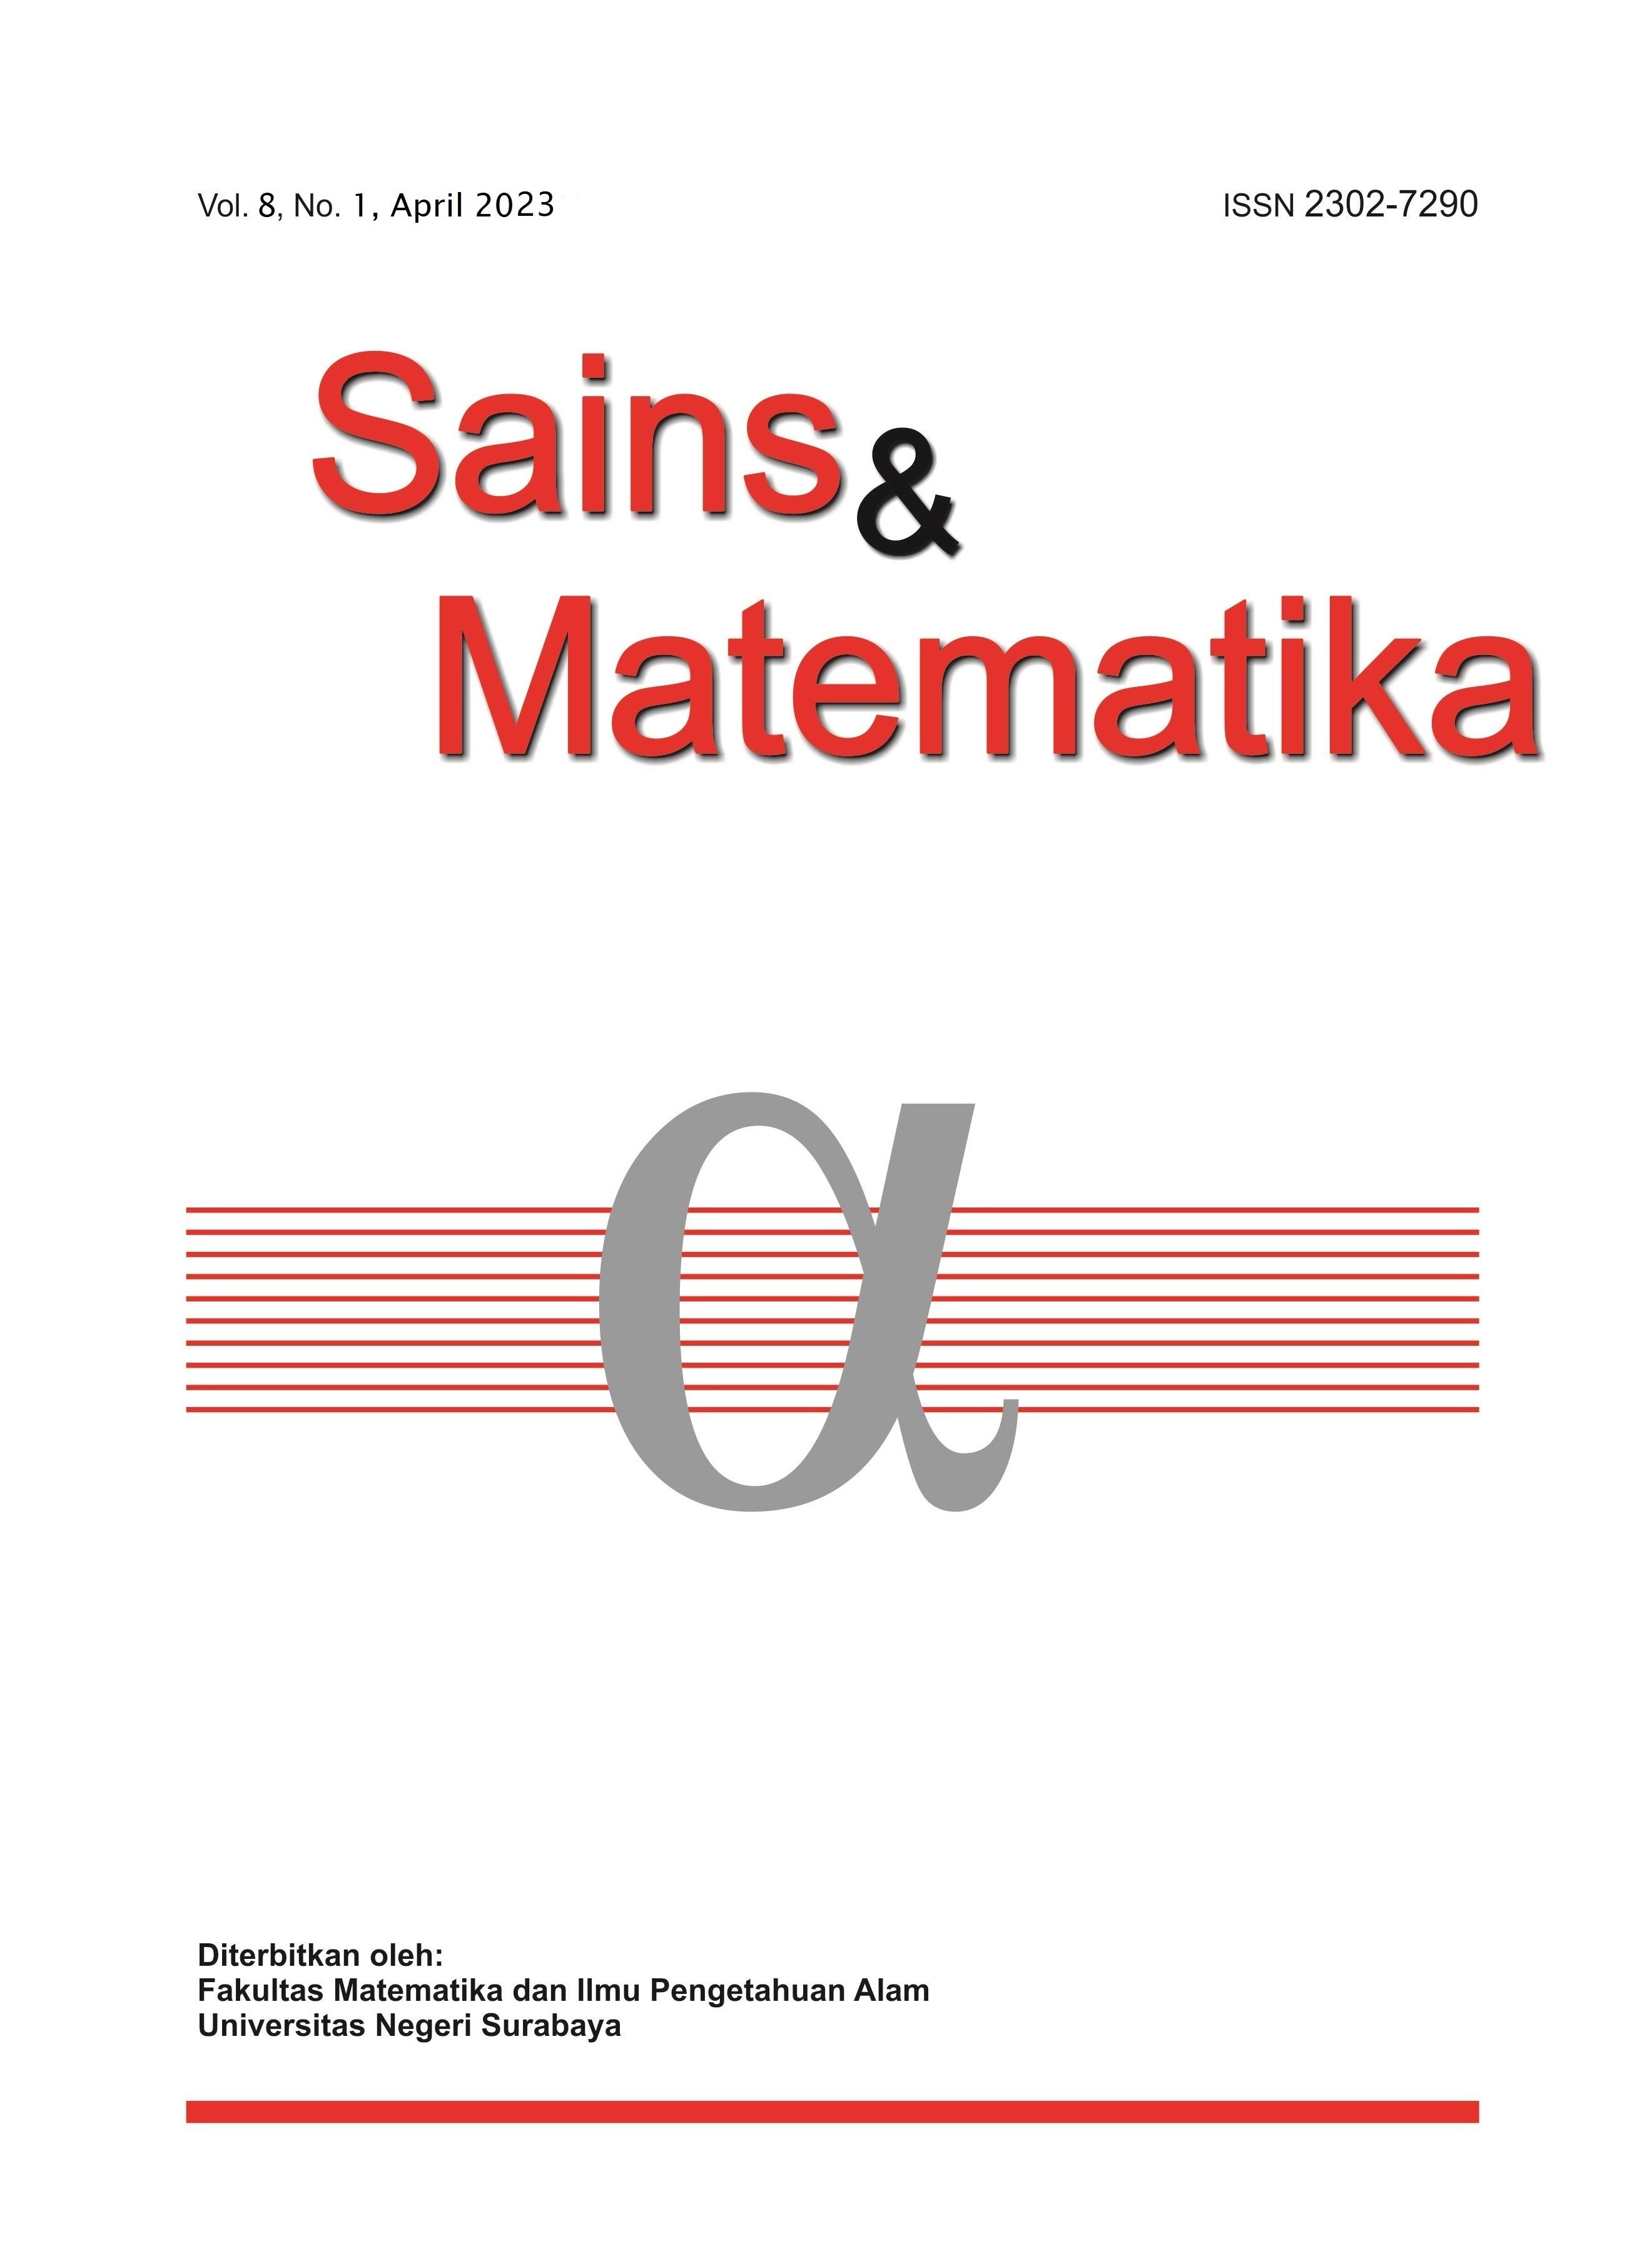 					View Vol. 8 No. 1 (2023): April, Sains & Matematika
				